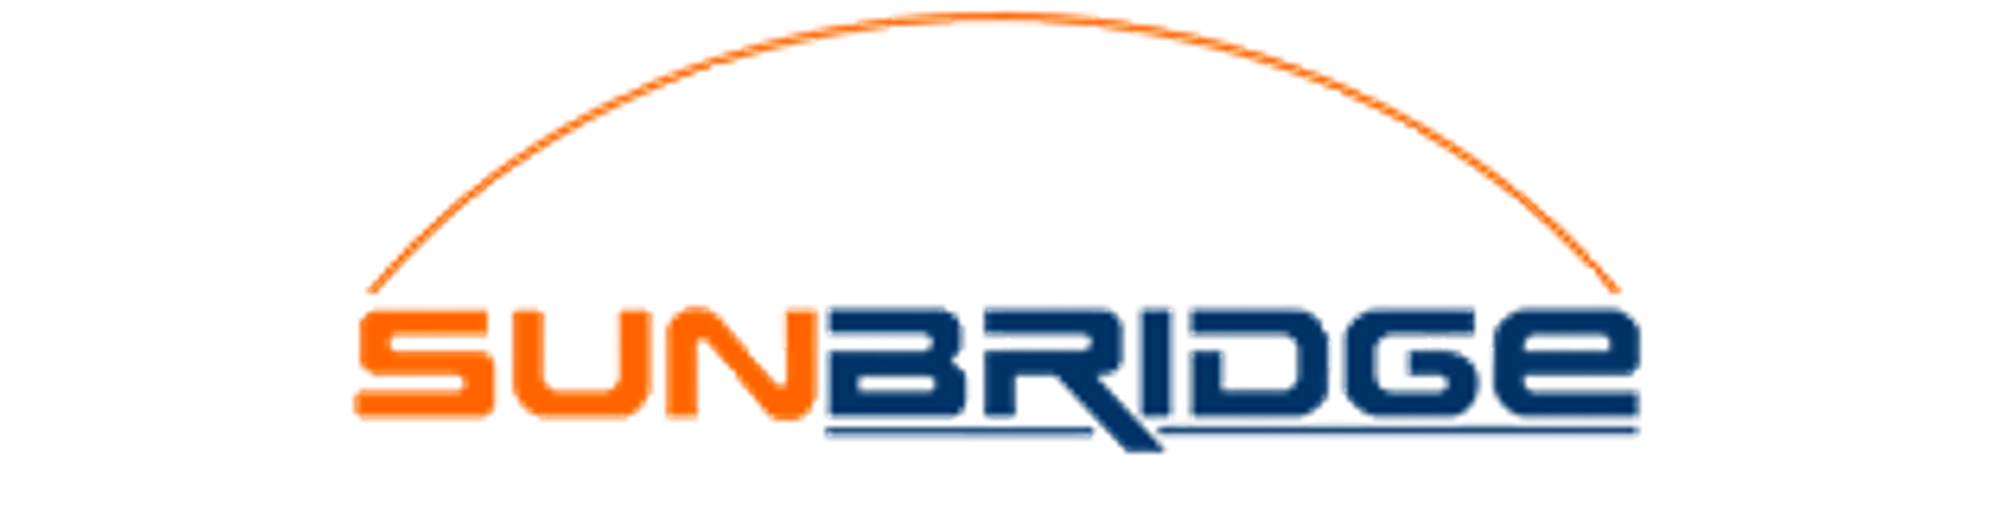 Sunbridge Software Services Pvt. Ltd